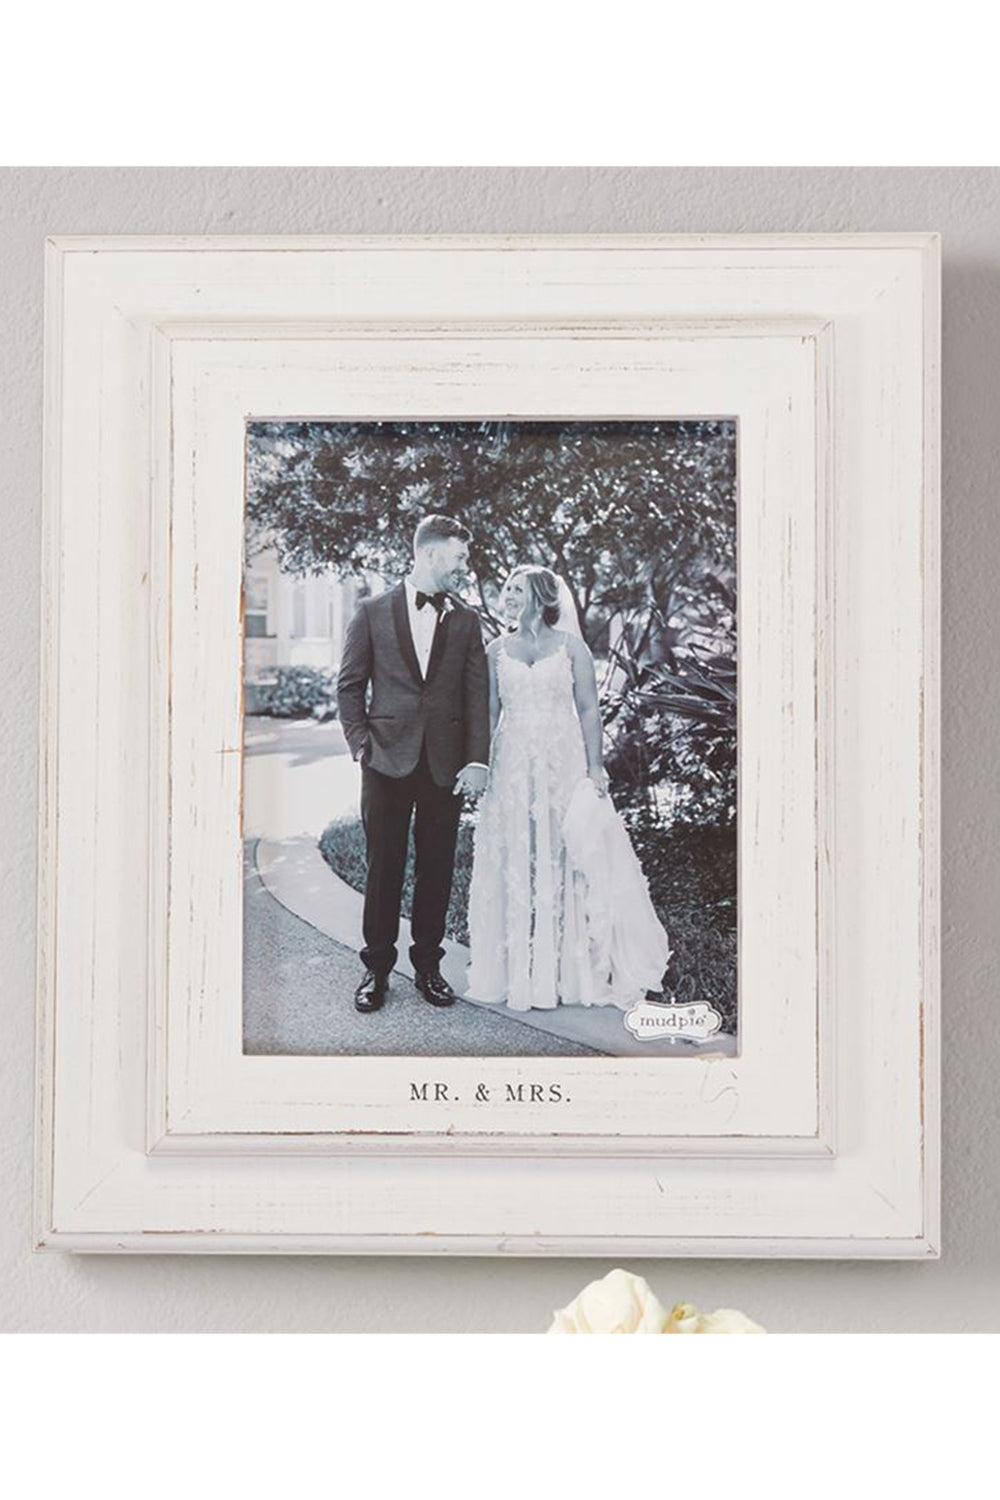 Mr. & Mrs. Large White Frame